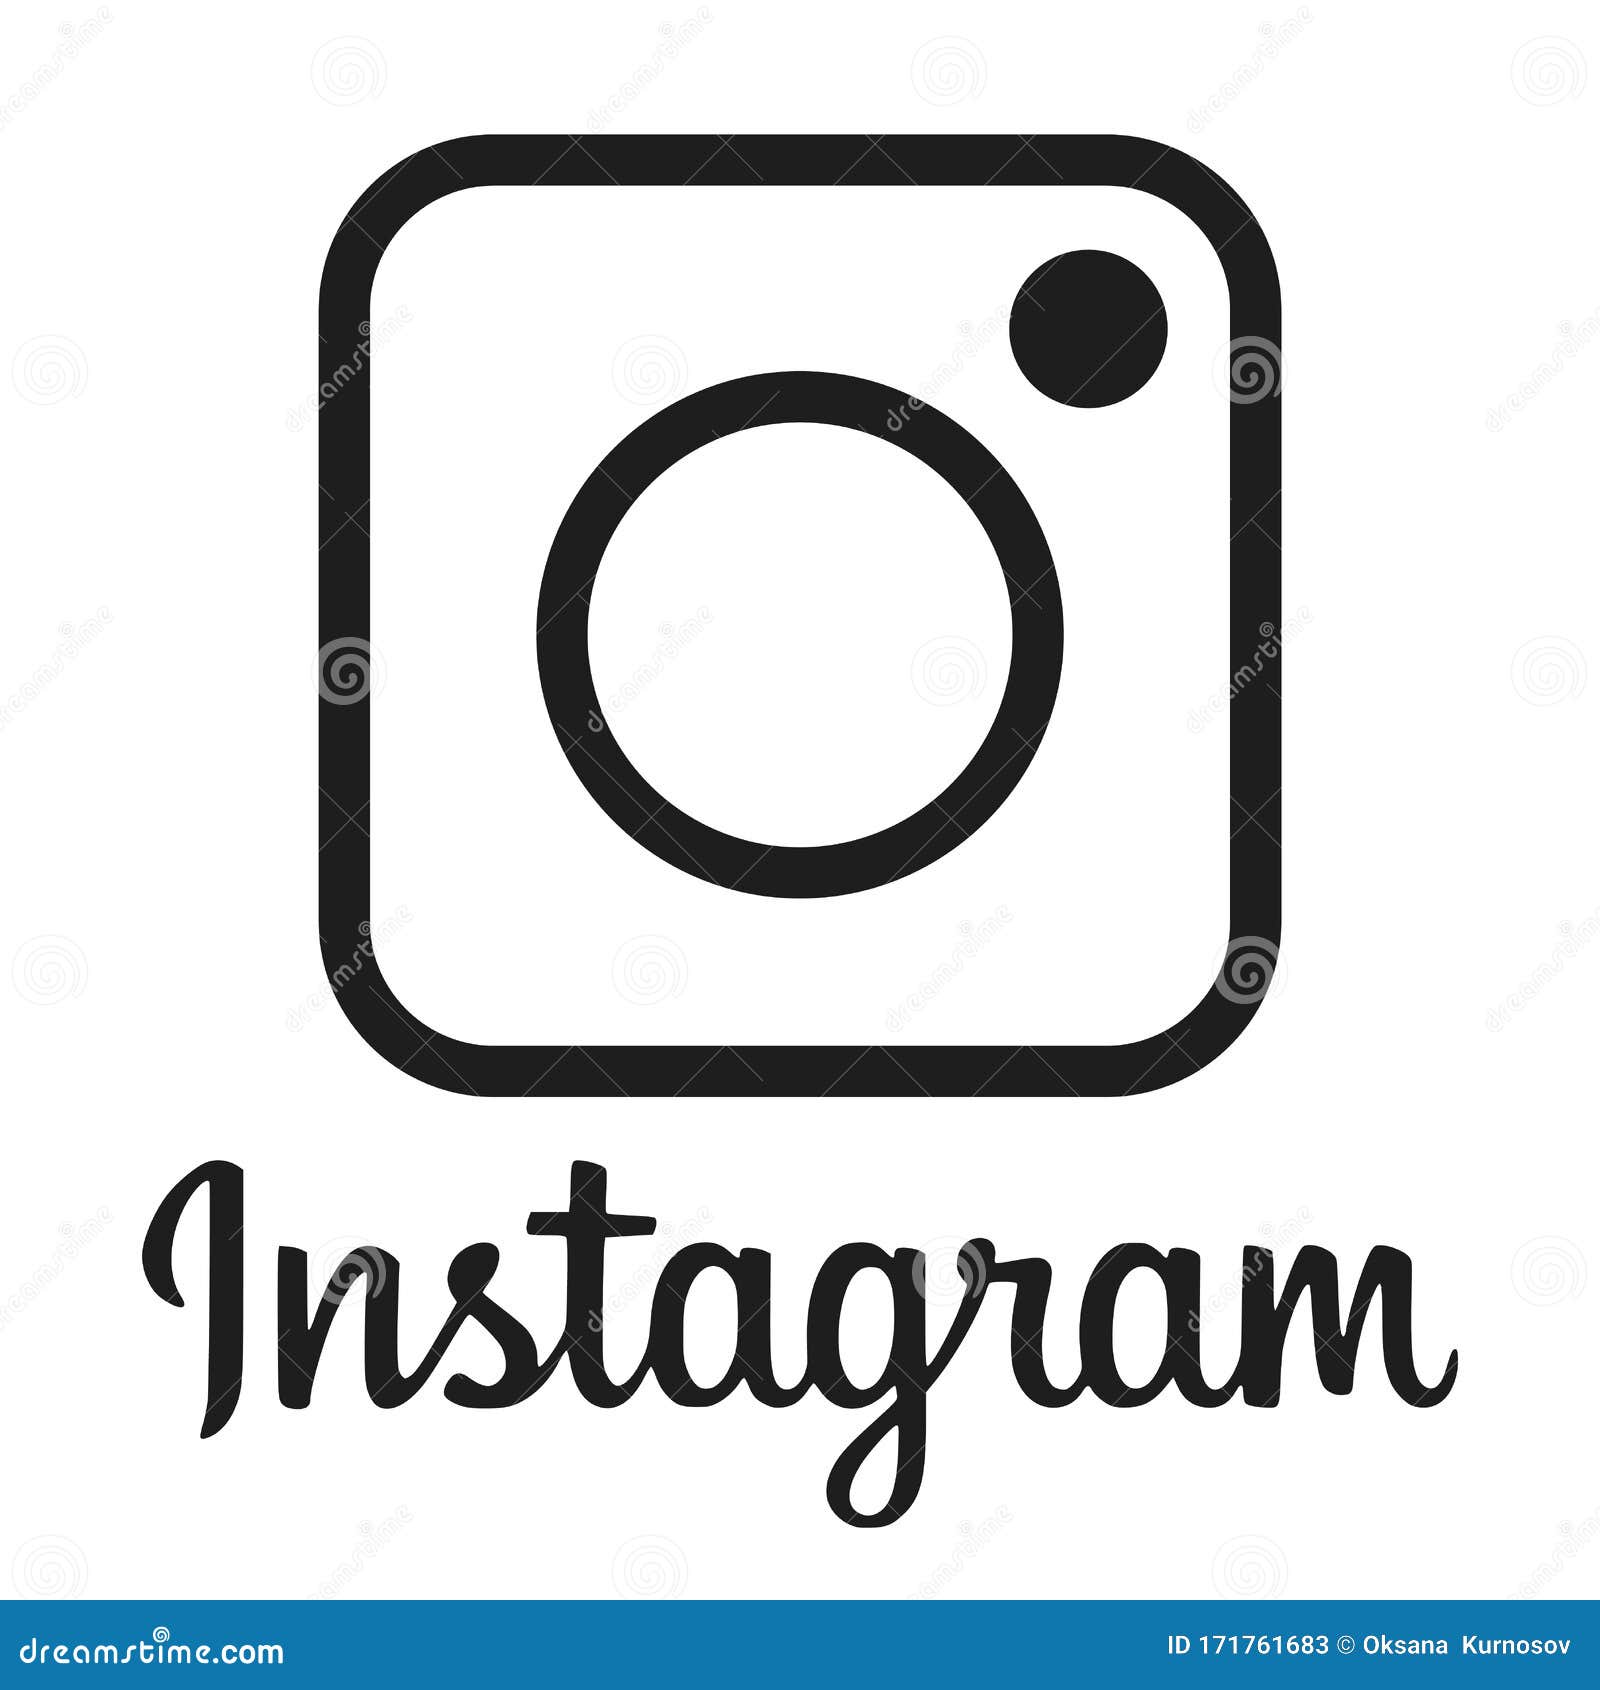 Kí hiệu Instagram mới: Instagram vừa tung ra kí hiệu mới vô cùng độc đáo và tinh tế, gia tăng trải nghiệm người dùng khi sử dụng ứng dụng này. Hãy đón xem hình ảnh mới nhất về kí hiệu Instagram này để cập nhật ngay nhé!